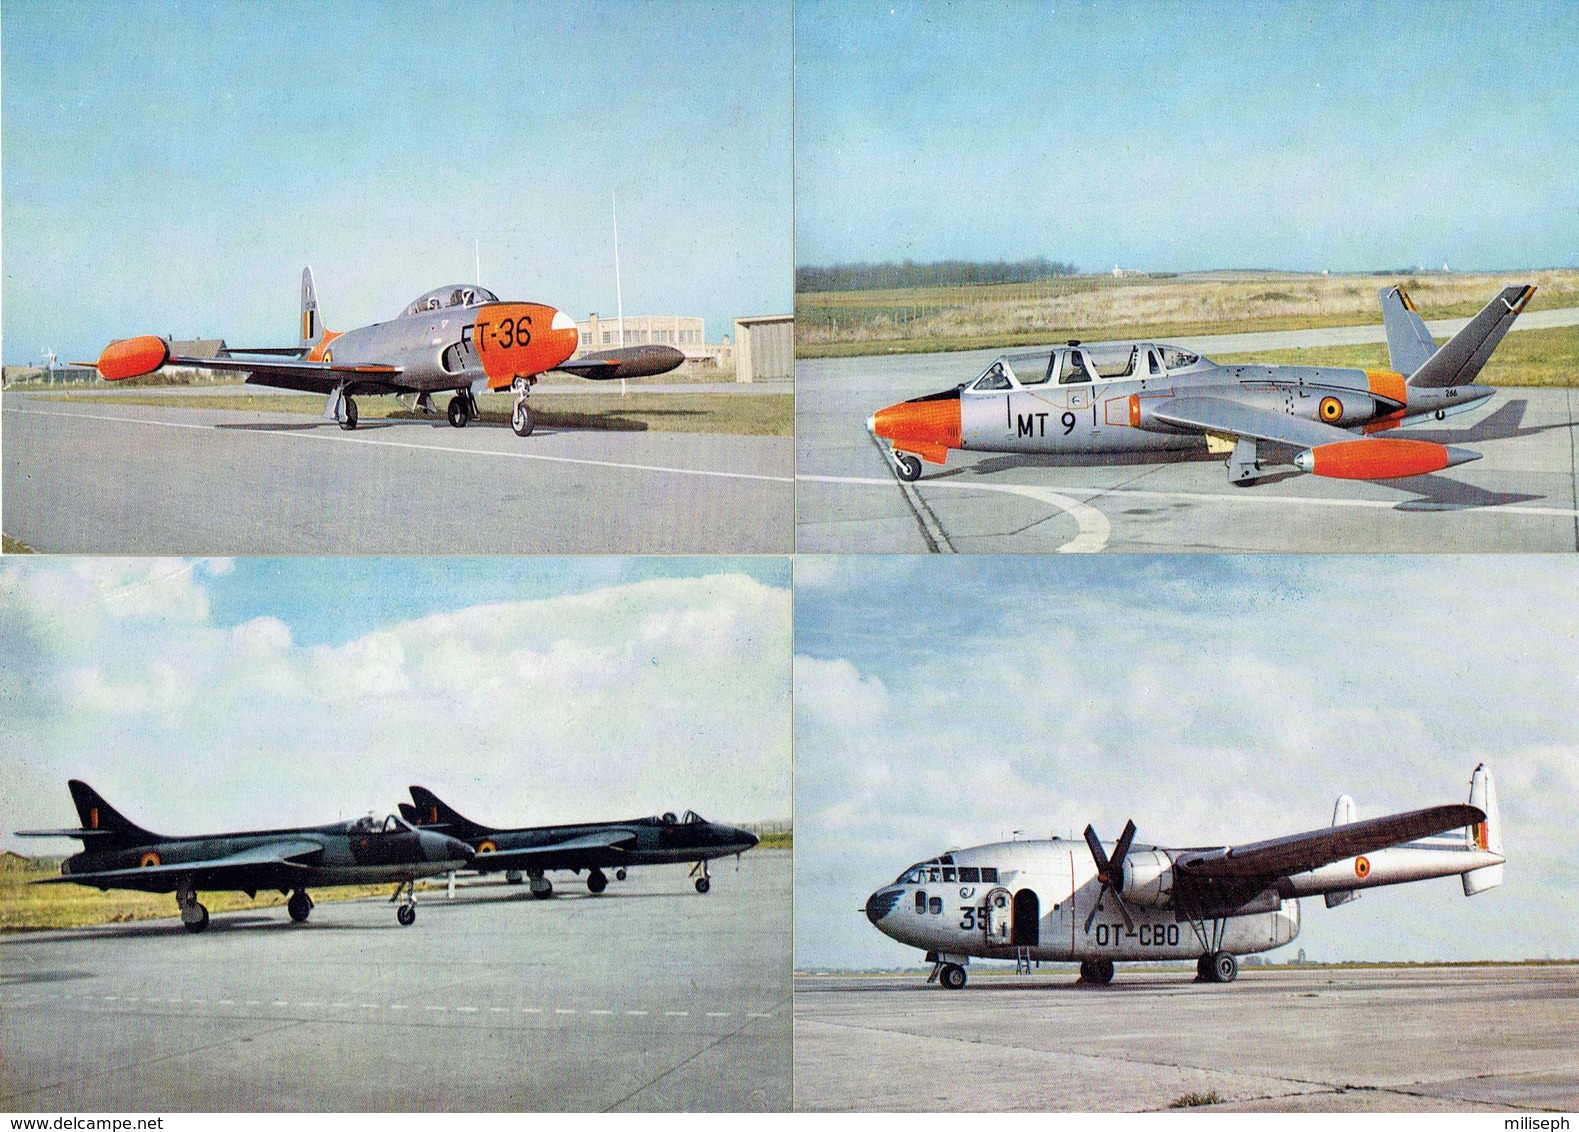 Pochette de 12 cartes postales - Toute la Force Aérienne Belge en 12 photos couleurs - +/- 1965    (4468)